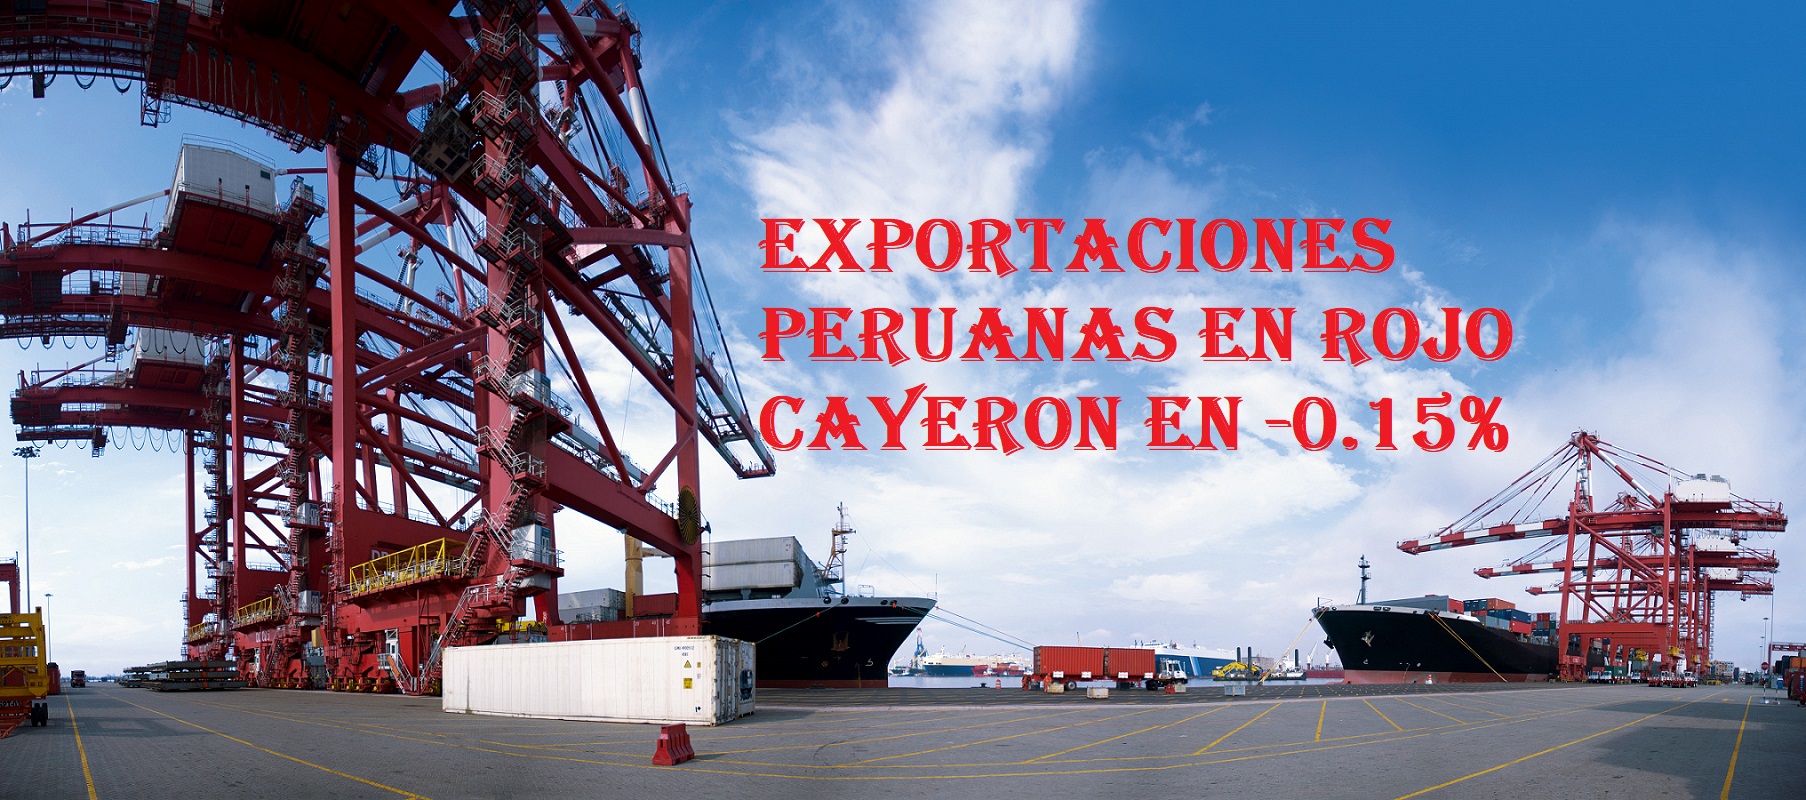 Caen en los primeros 5 meses del 2023 las exportaciones peruanas en -0.15%, informó el primer gremio exportador del país ADEX.